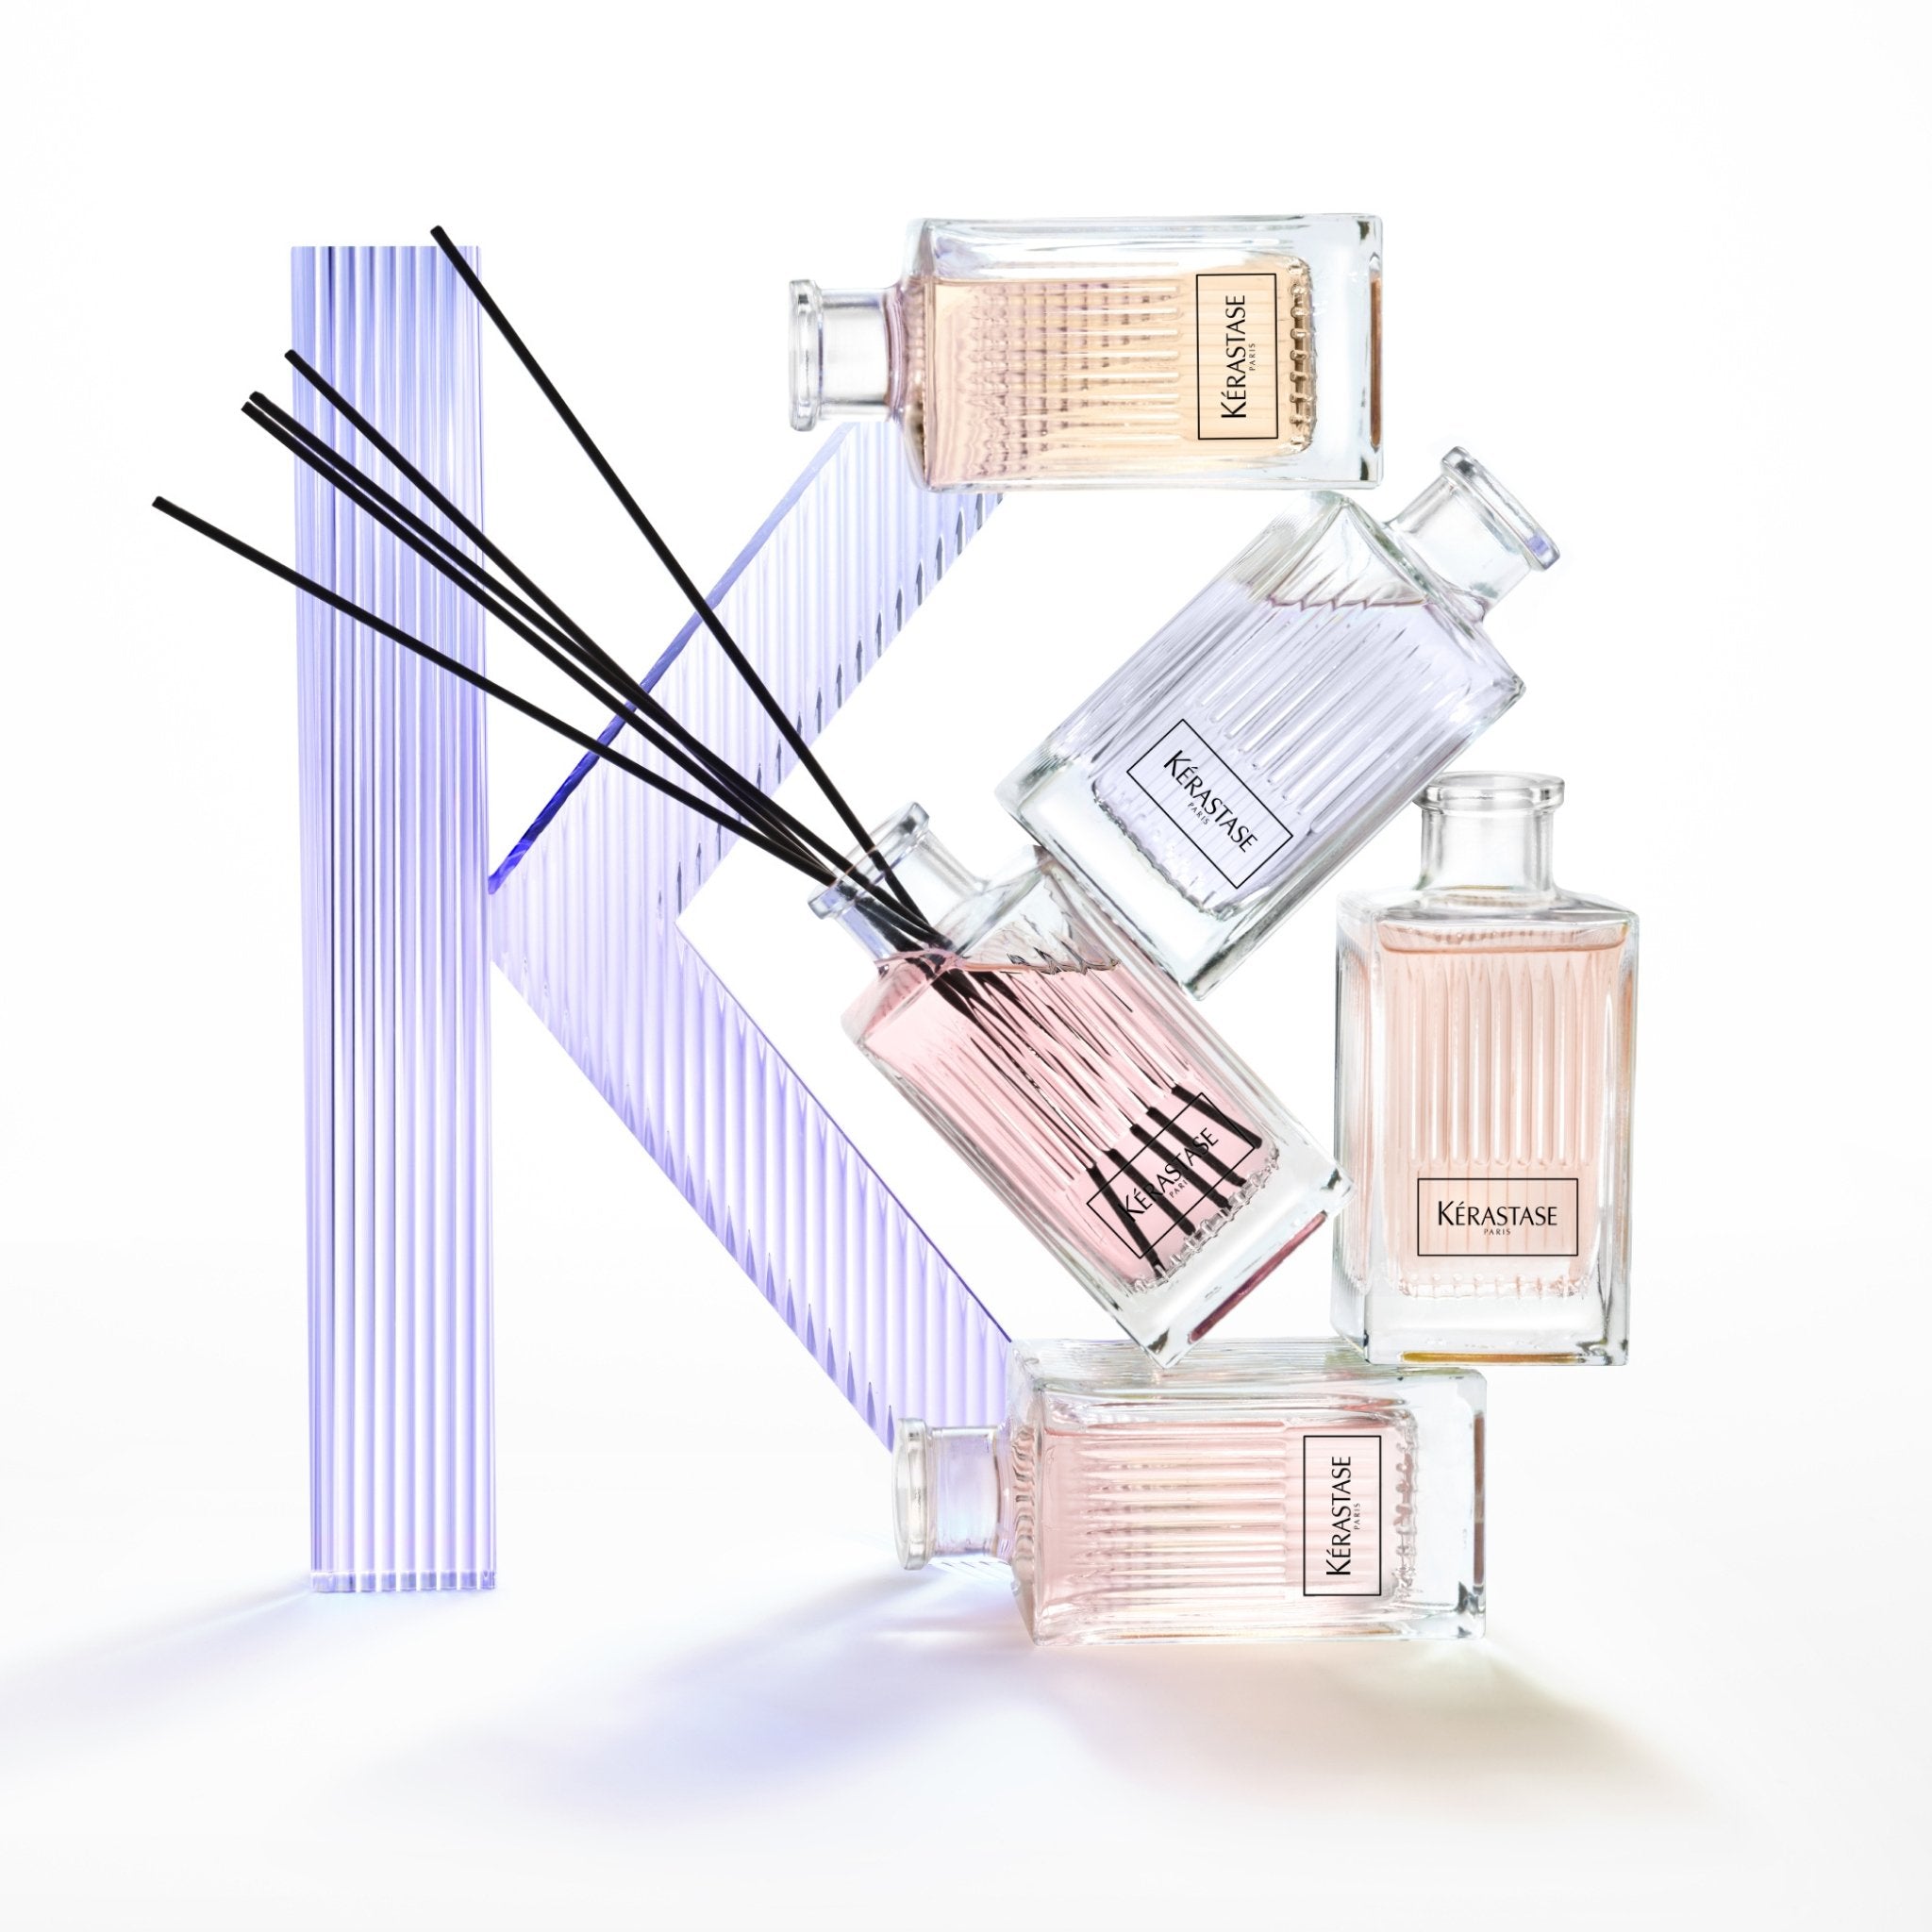 Kérastase. Parfum d'Ambiance Nutritive - Concept C. Shop